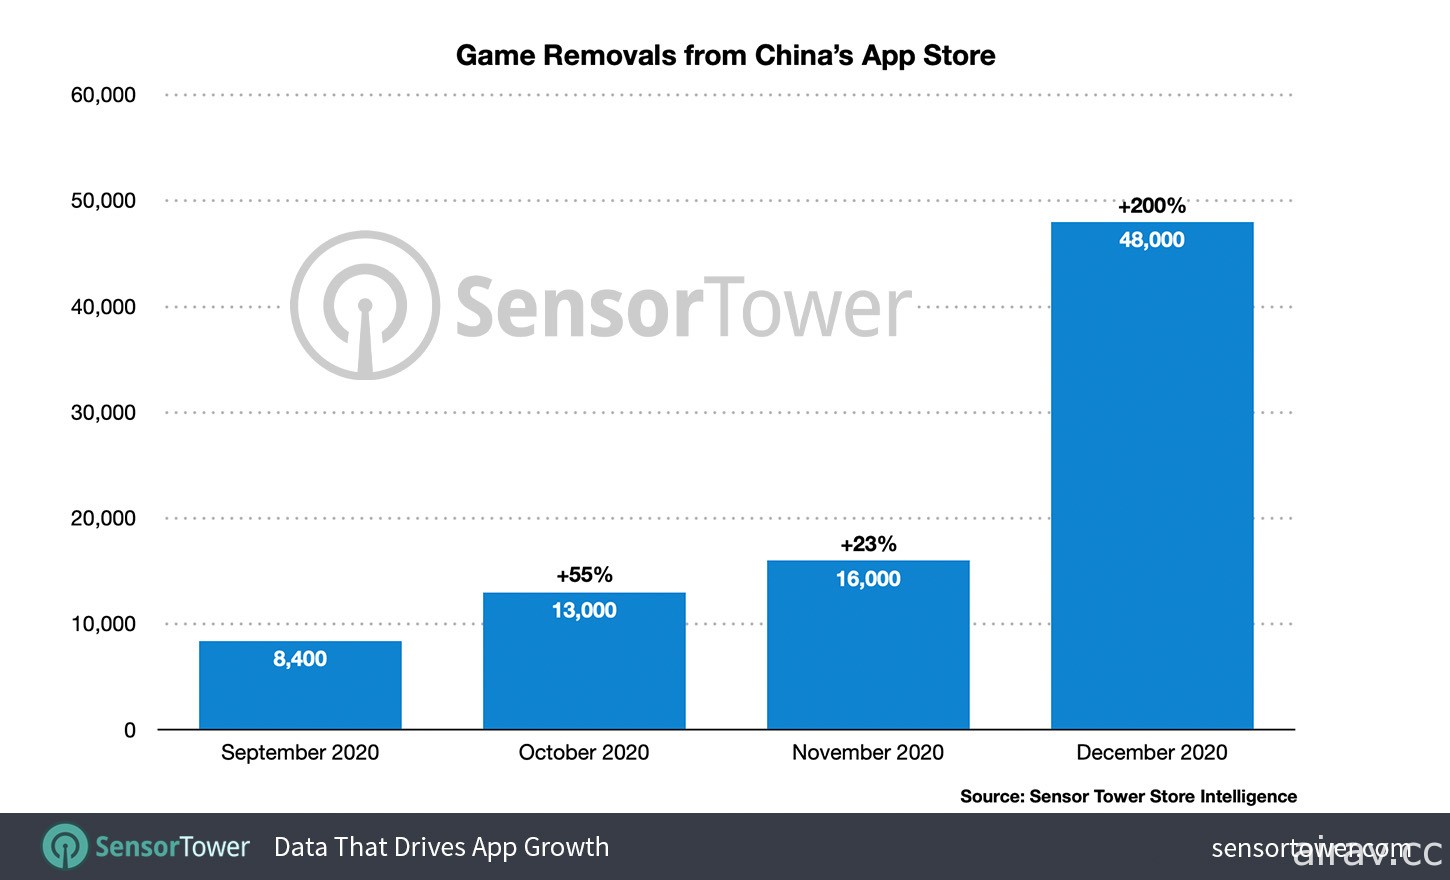 外电指出 2020 年 12 月近 50,000 款手机游戏自中国 App Store 下架